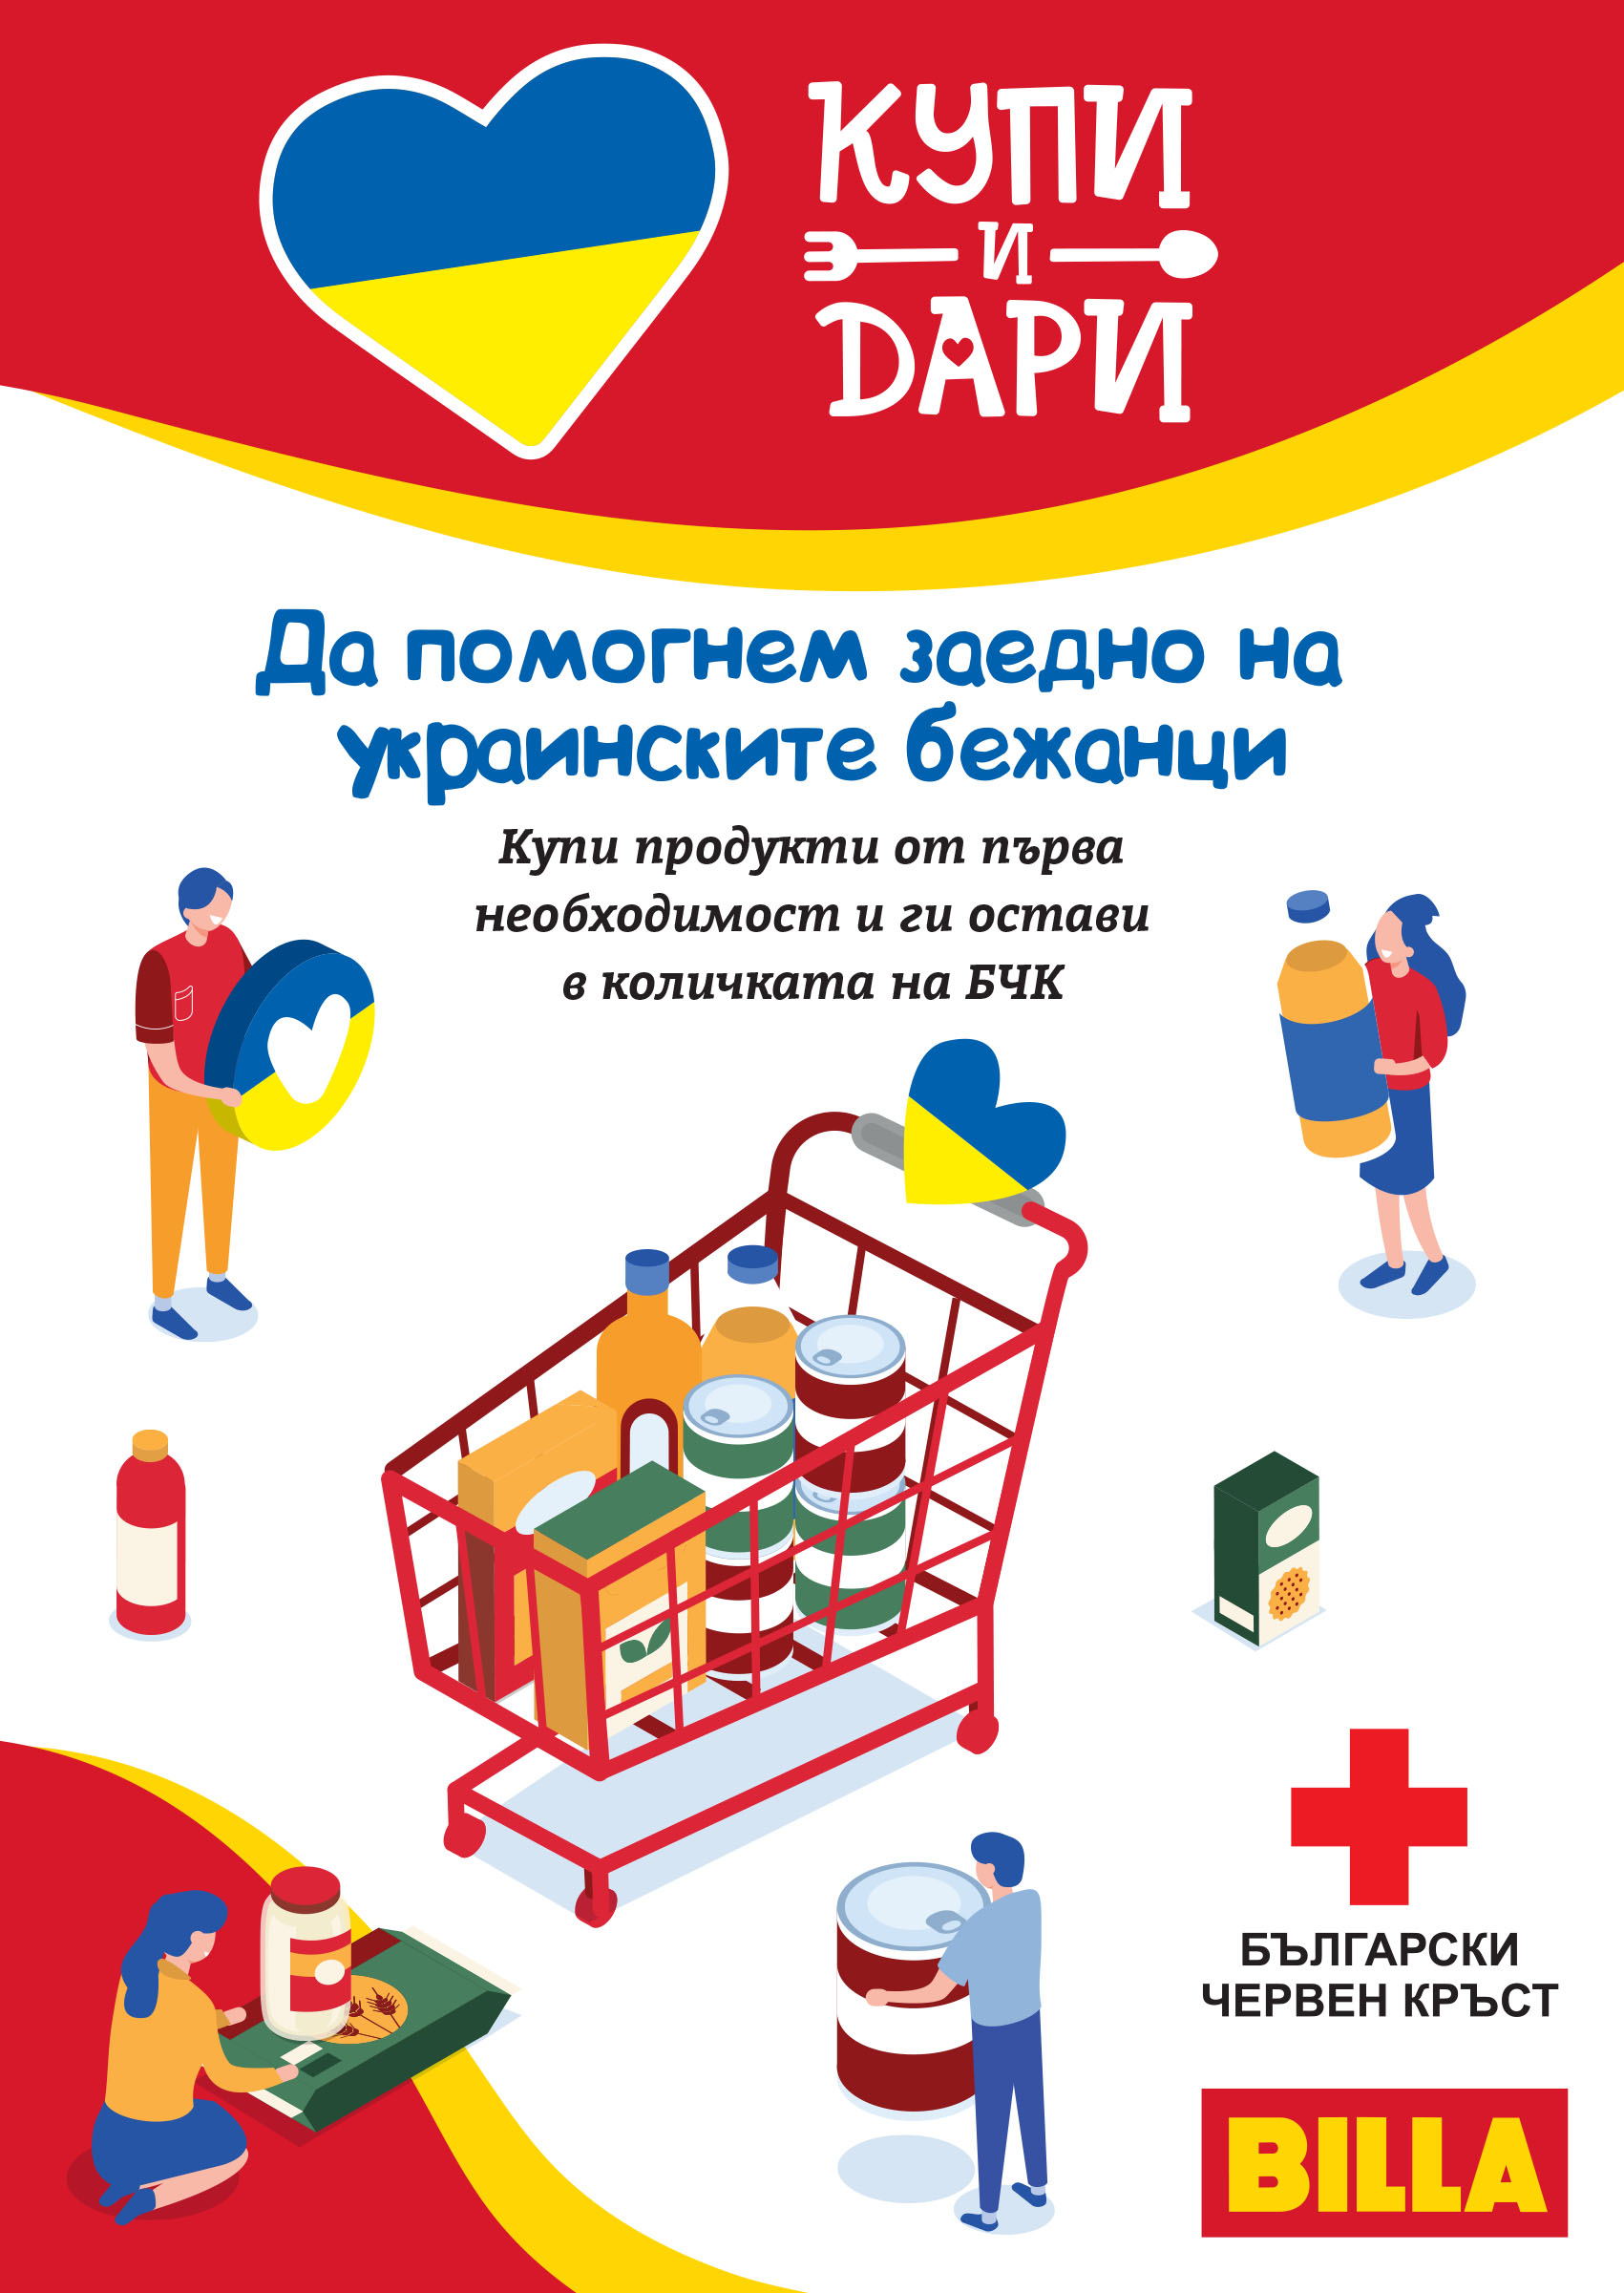 BILLA удължава кампанията „Купи и Дари“ и подкрепя „Мати Украйна“ с дарение към украинските бежанци